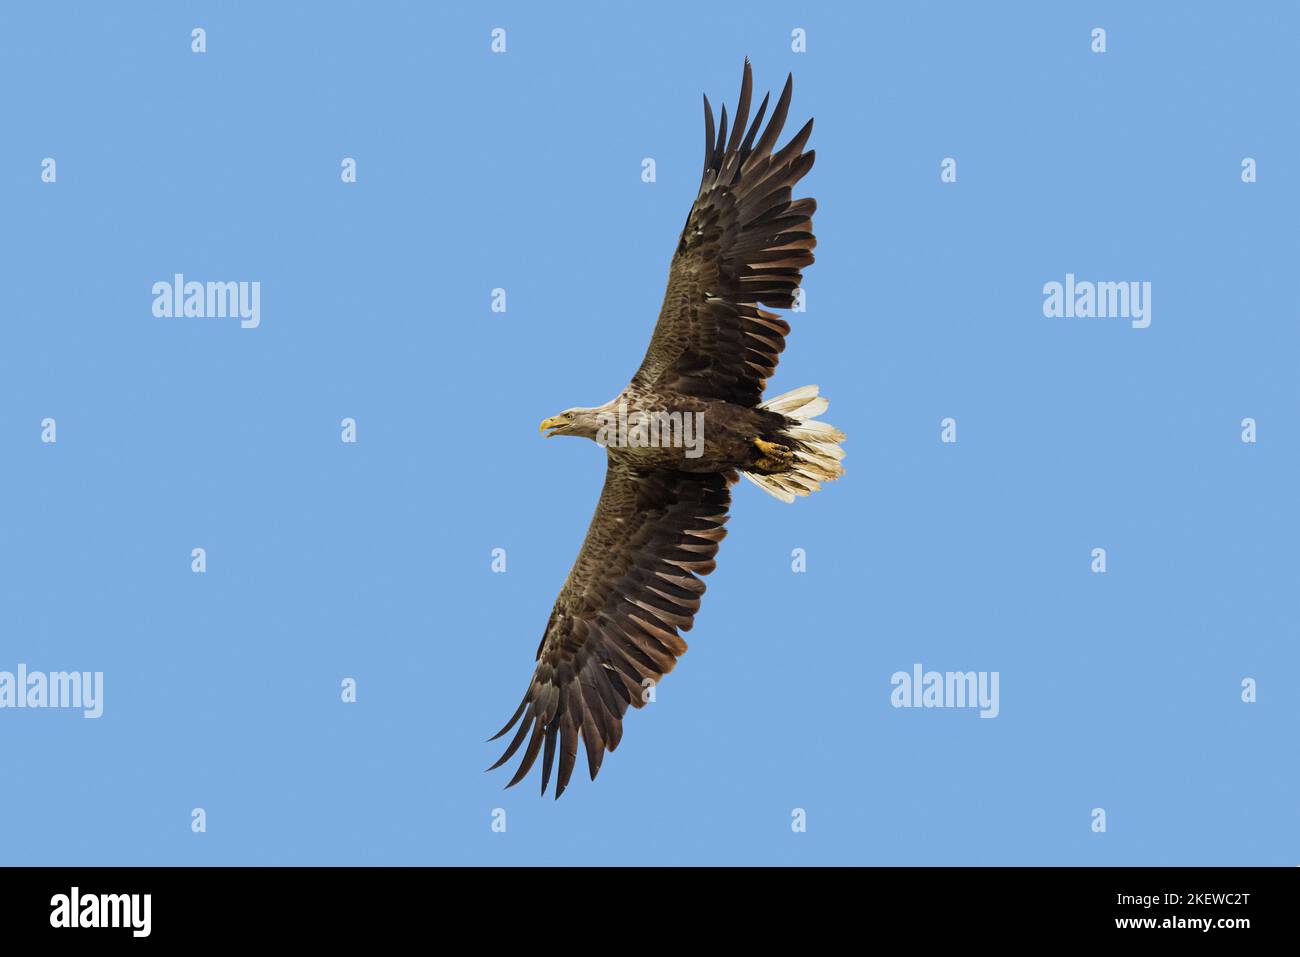 Águila de cola blanca / Águila marina euroasiática / erne (Haliaeetus albicilla) adulto que llama en vuelo en verano contra el cielo azul Foto de stock